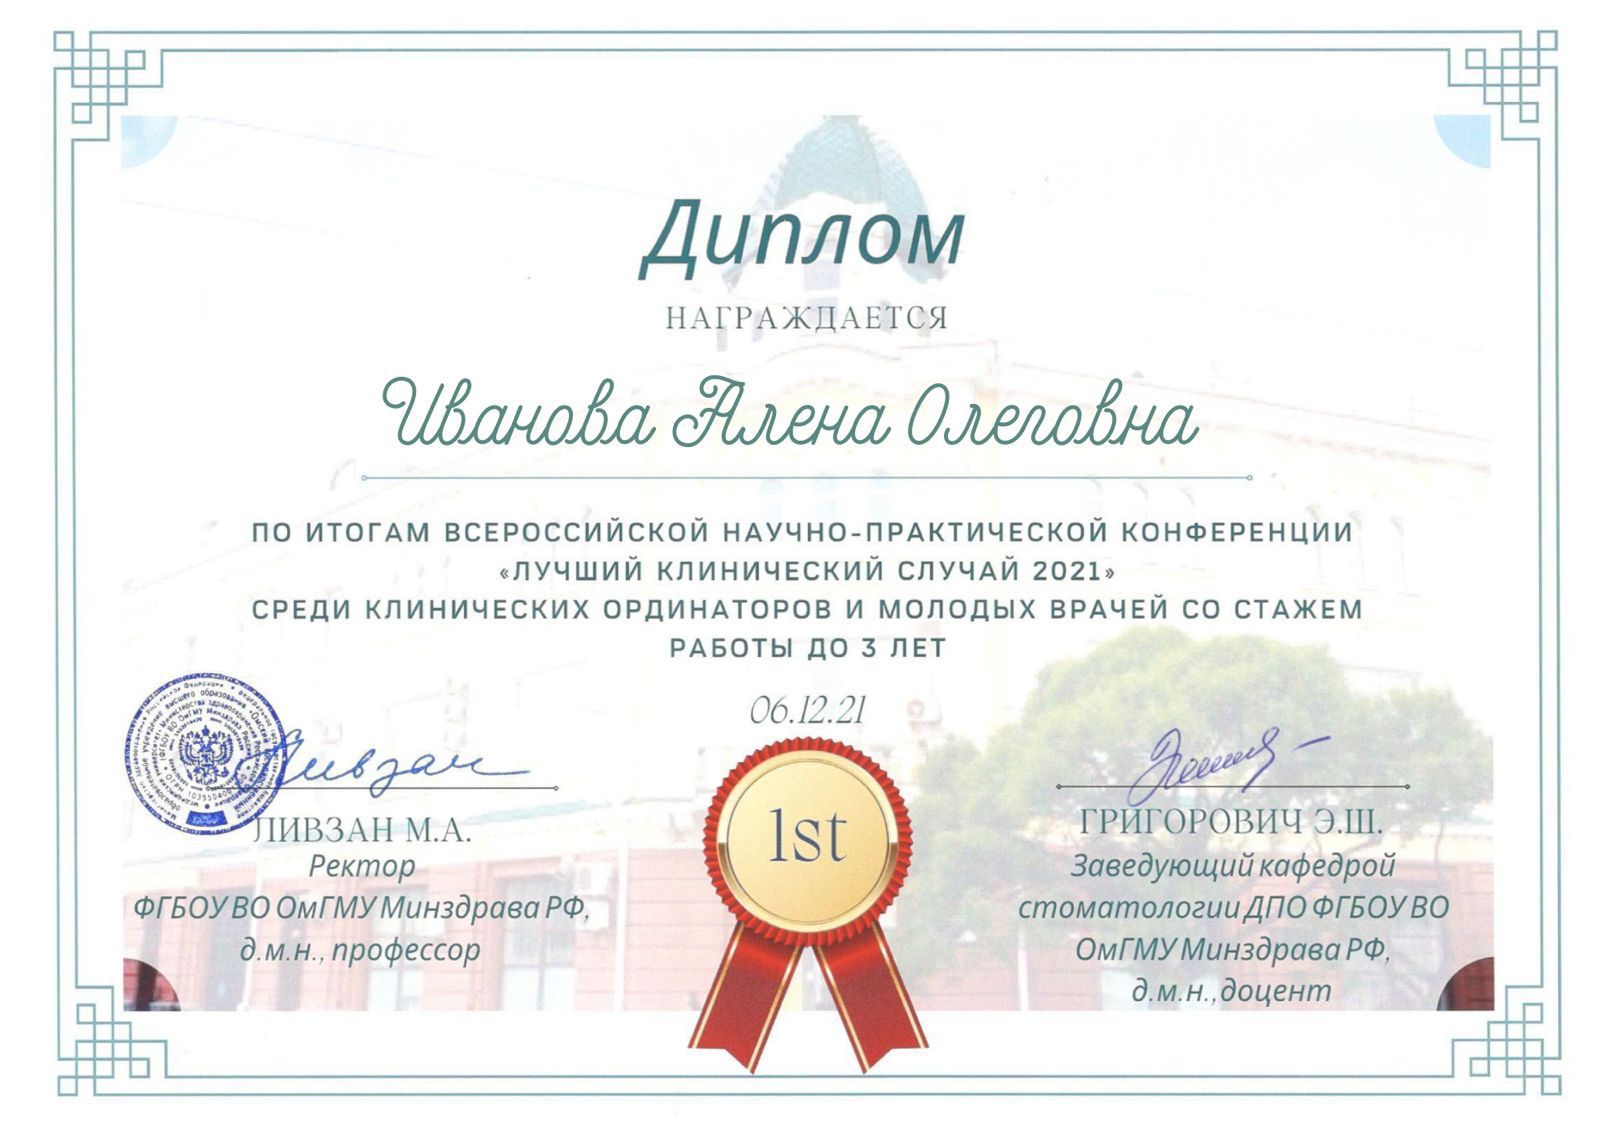 Сертификат 1 получил Алена Олеговна 